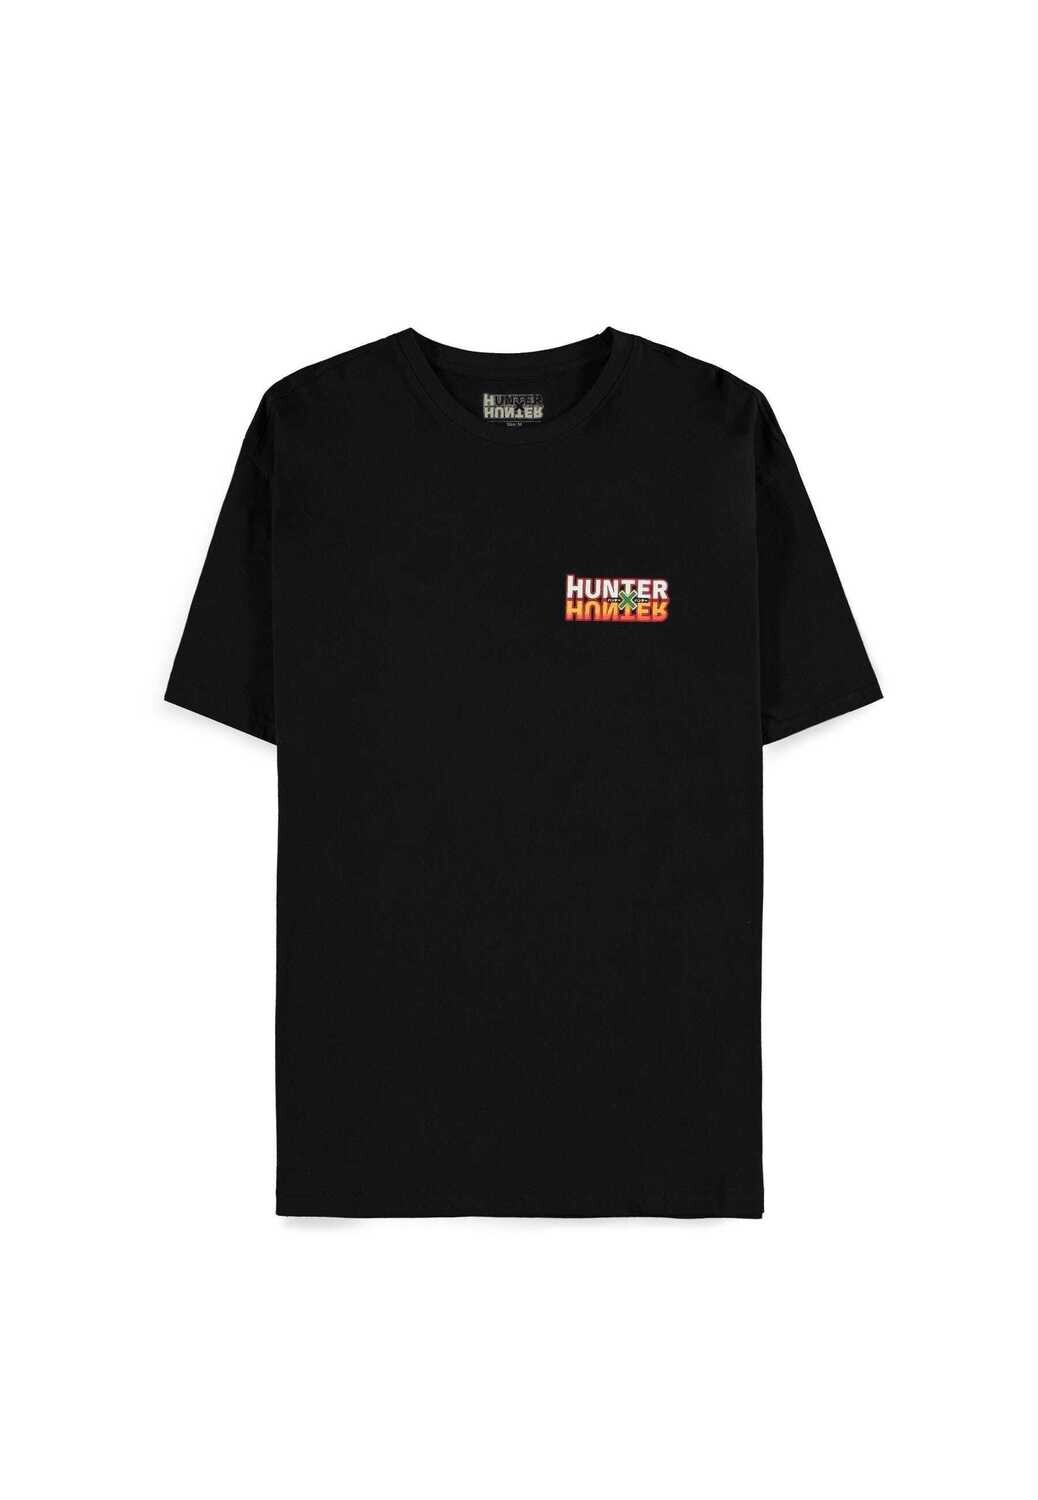 Hunter X Hunter - Group Character - Men's Short Sleeved T-shirt